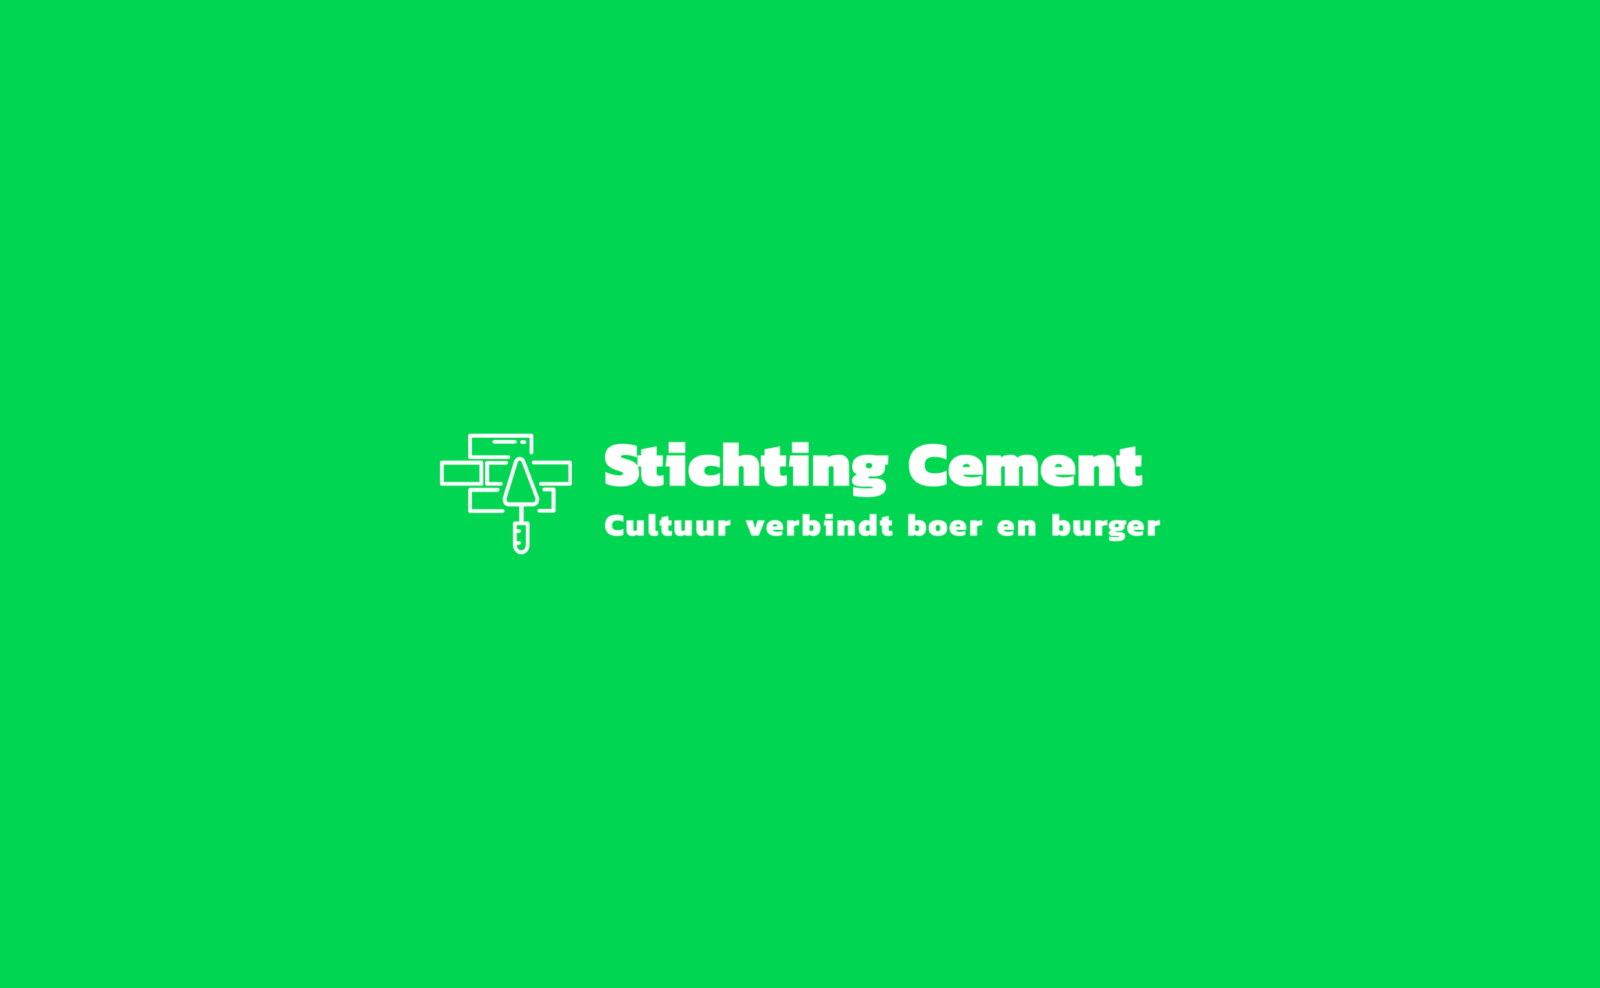 Logo stichting cement